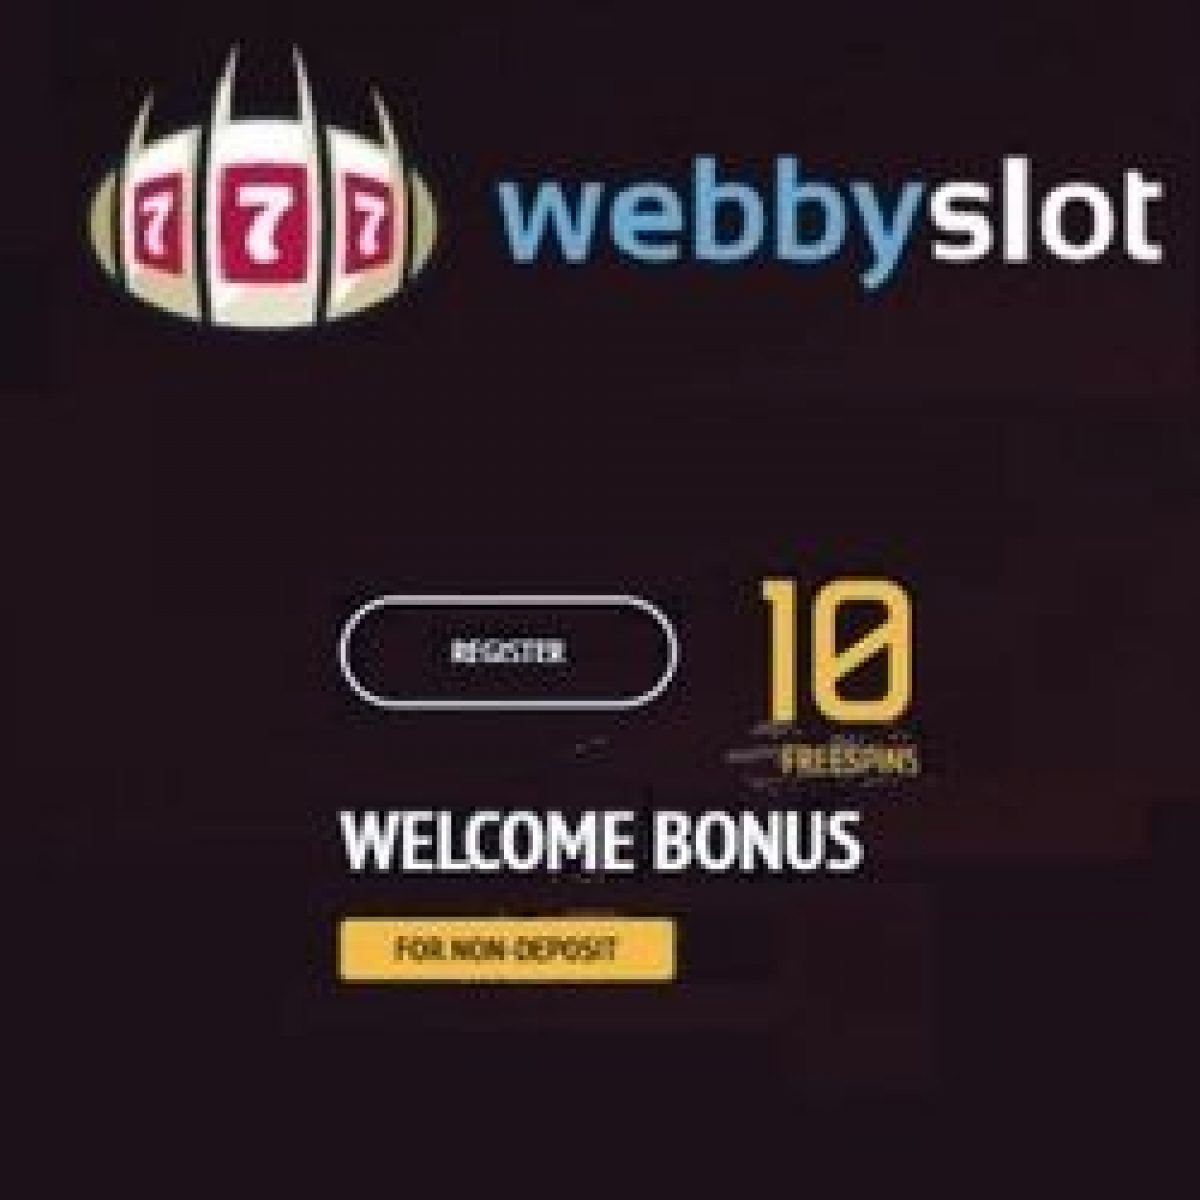 Webby slot bonus codes